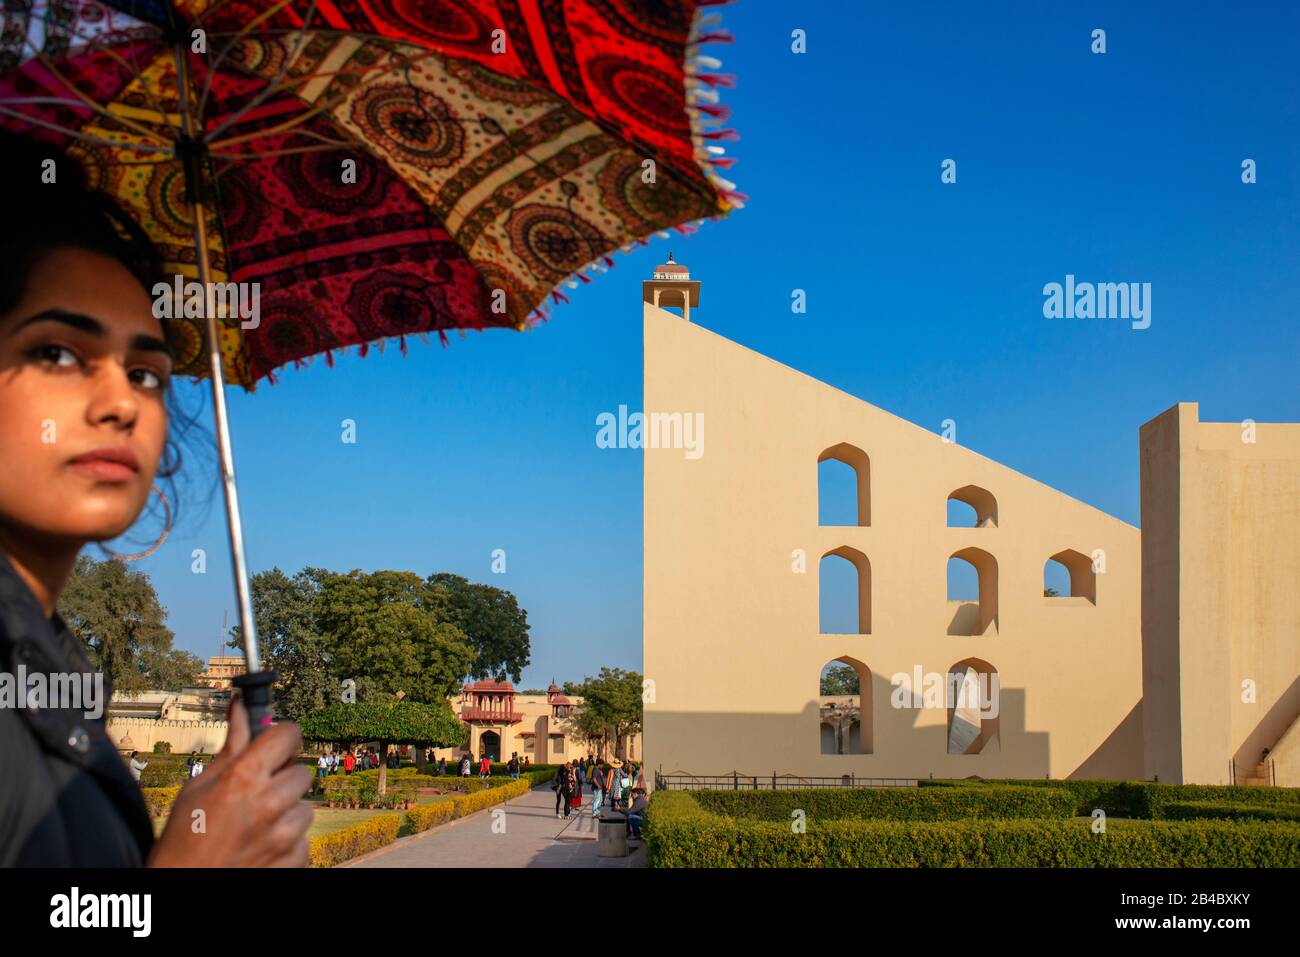 Complexe d'observatoire de Jantar Mantar au ciel bleu à Jaipur, Rajasthan, Inde. C'est l'une des excursions du train de luxe Maharajas express. Banque D'Images